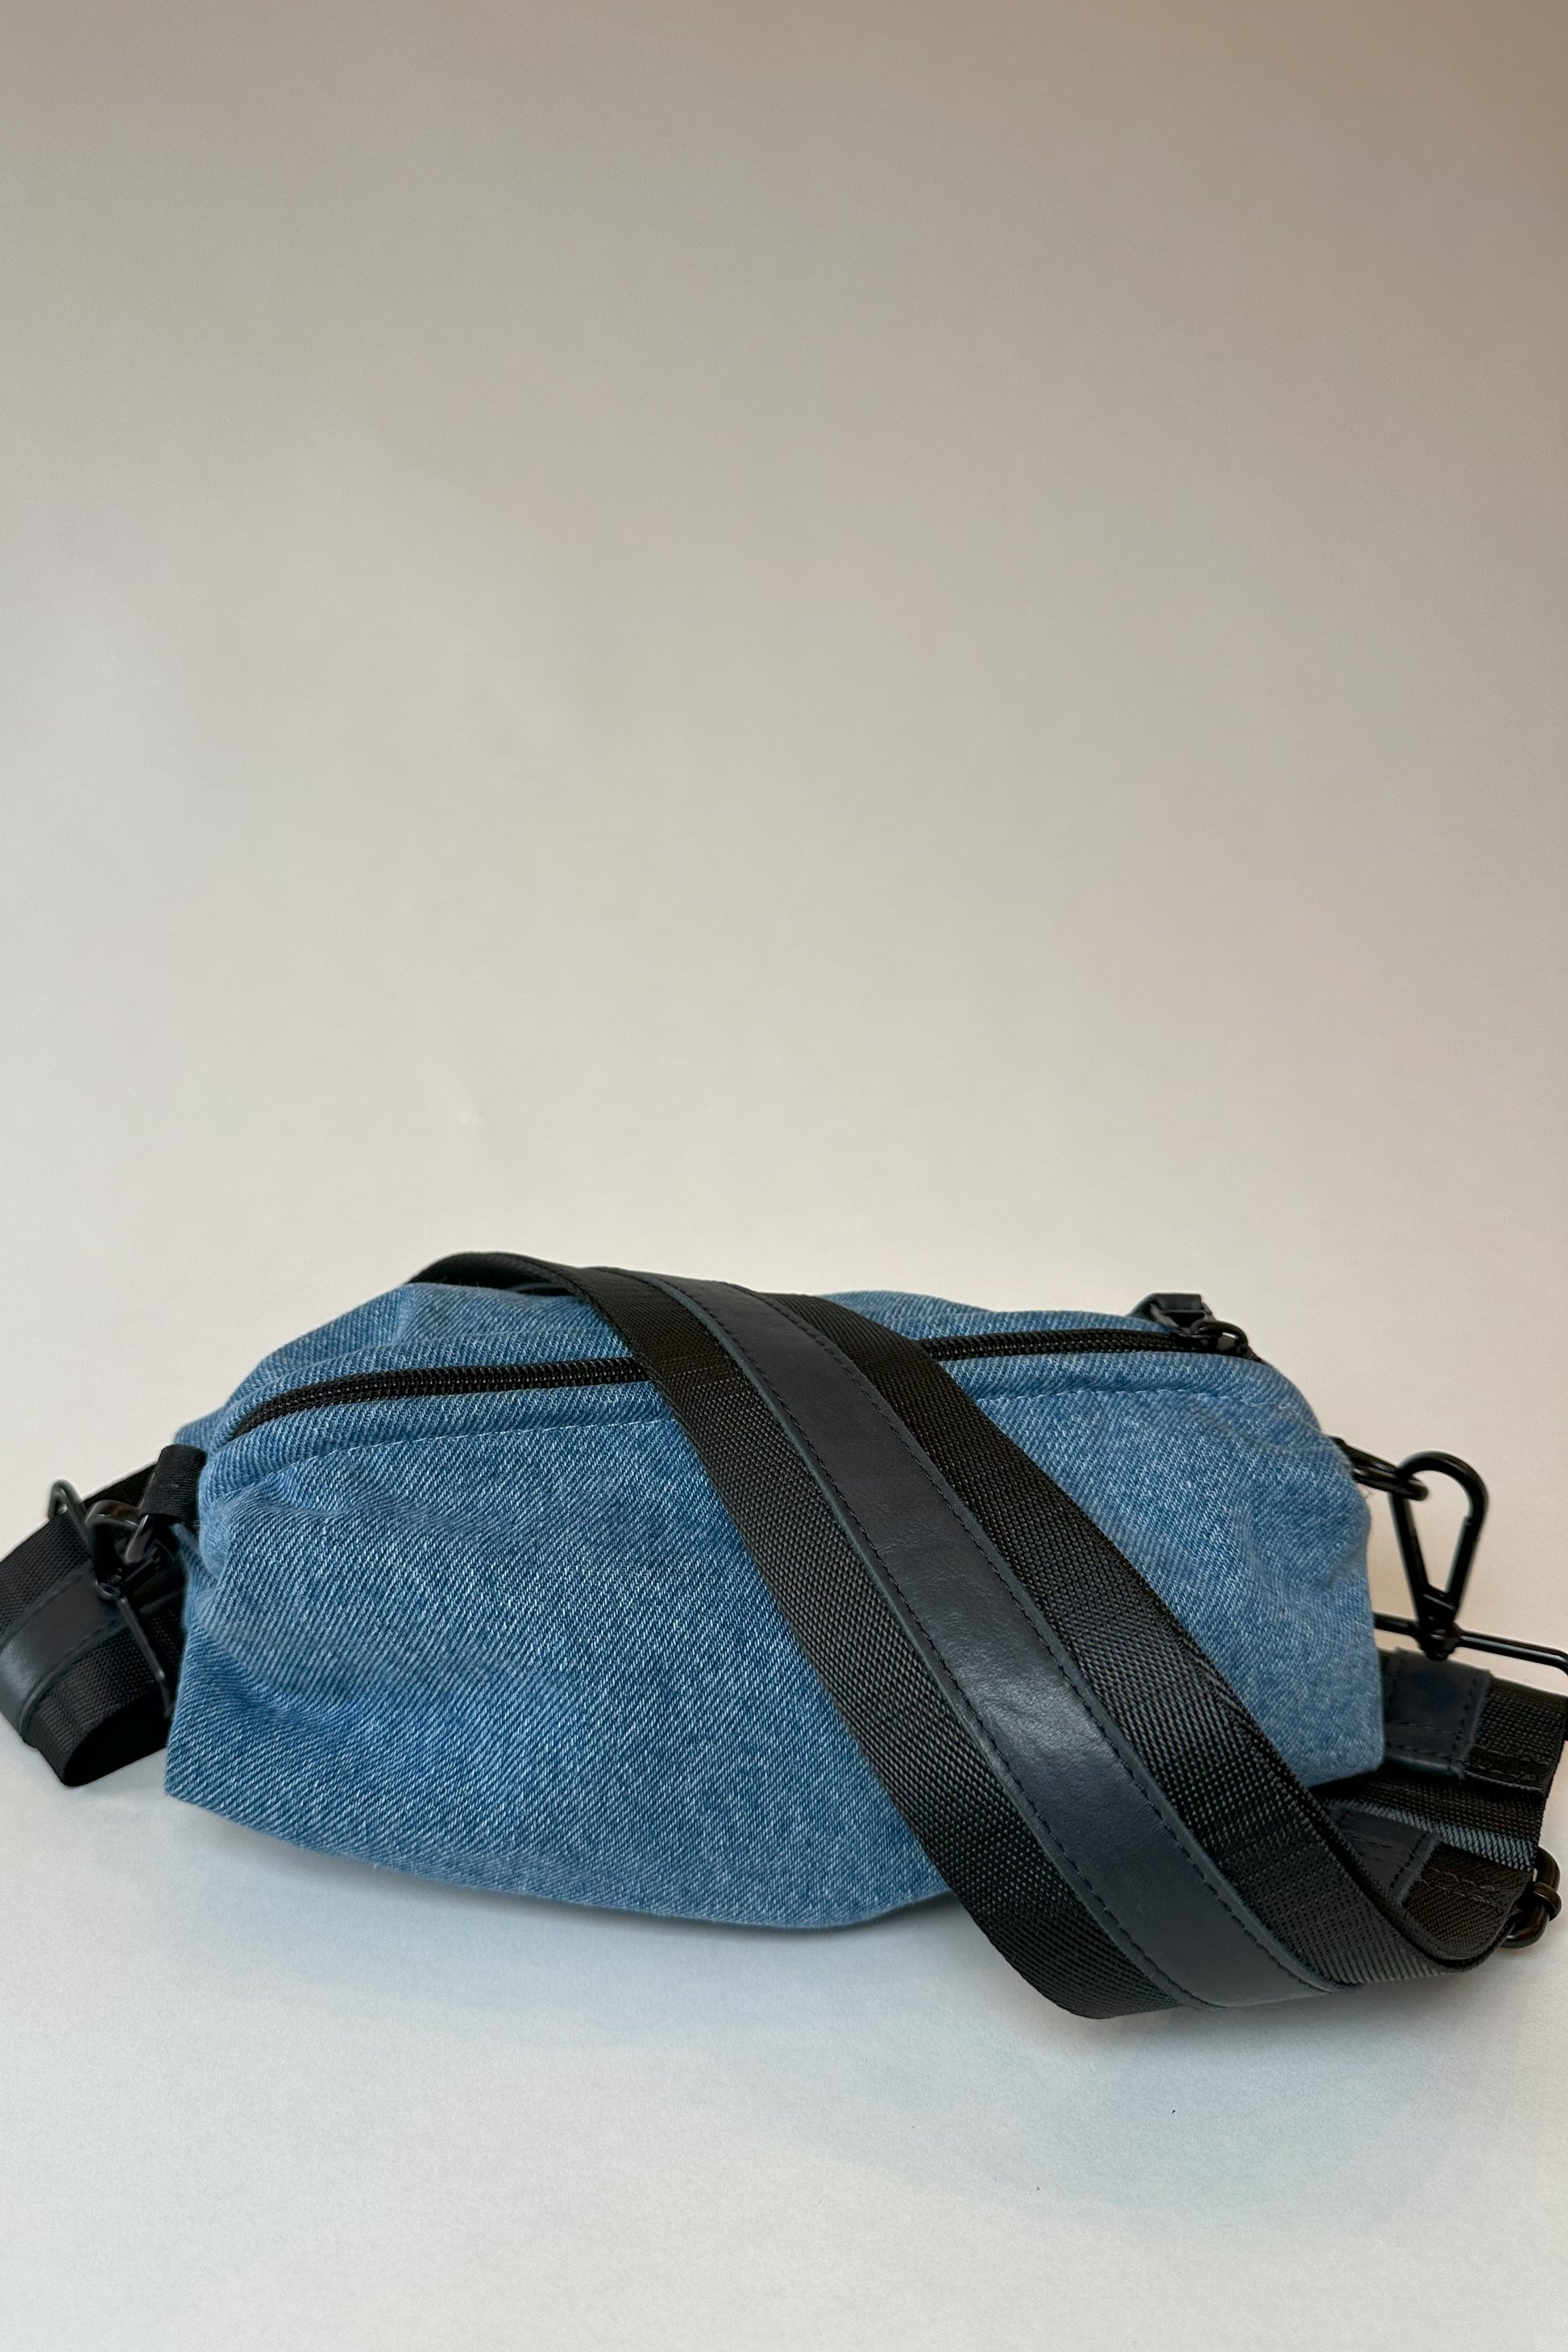 Denim belt bag with black crossbody/belt bag strap with black leather detail